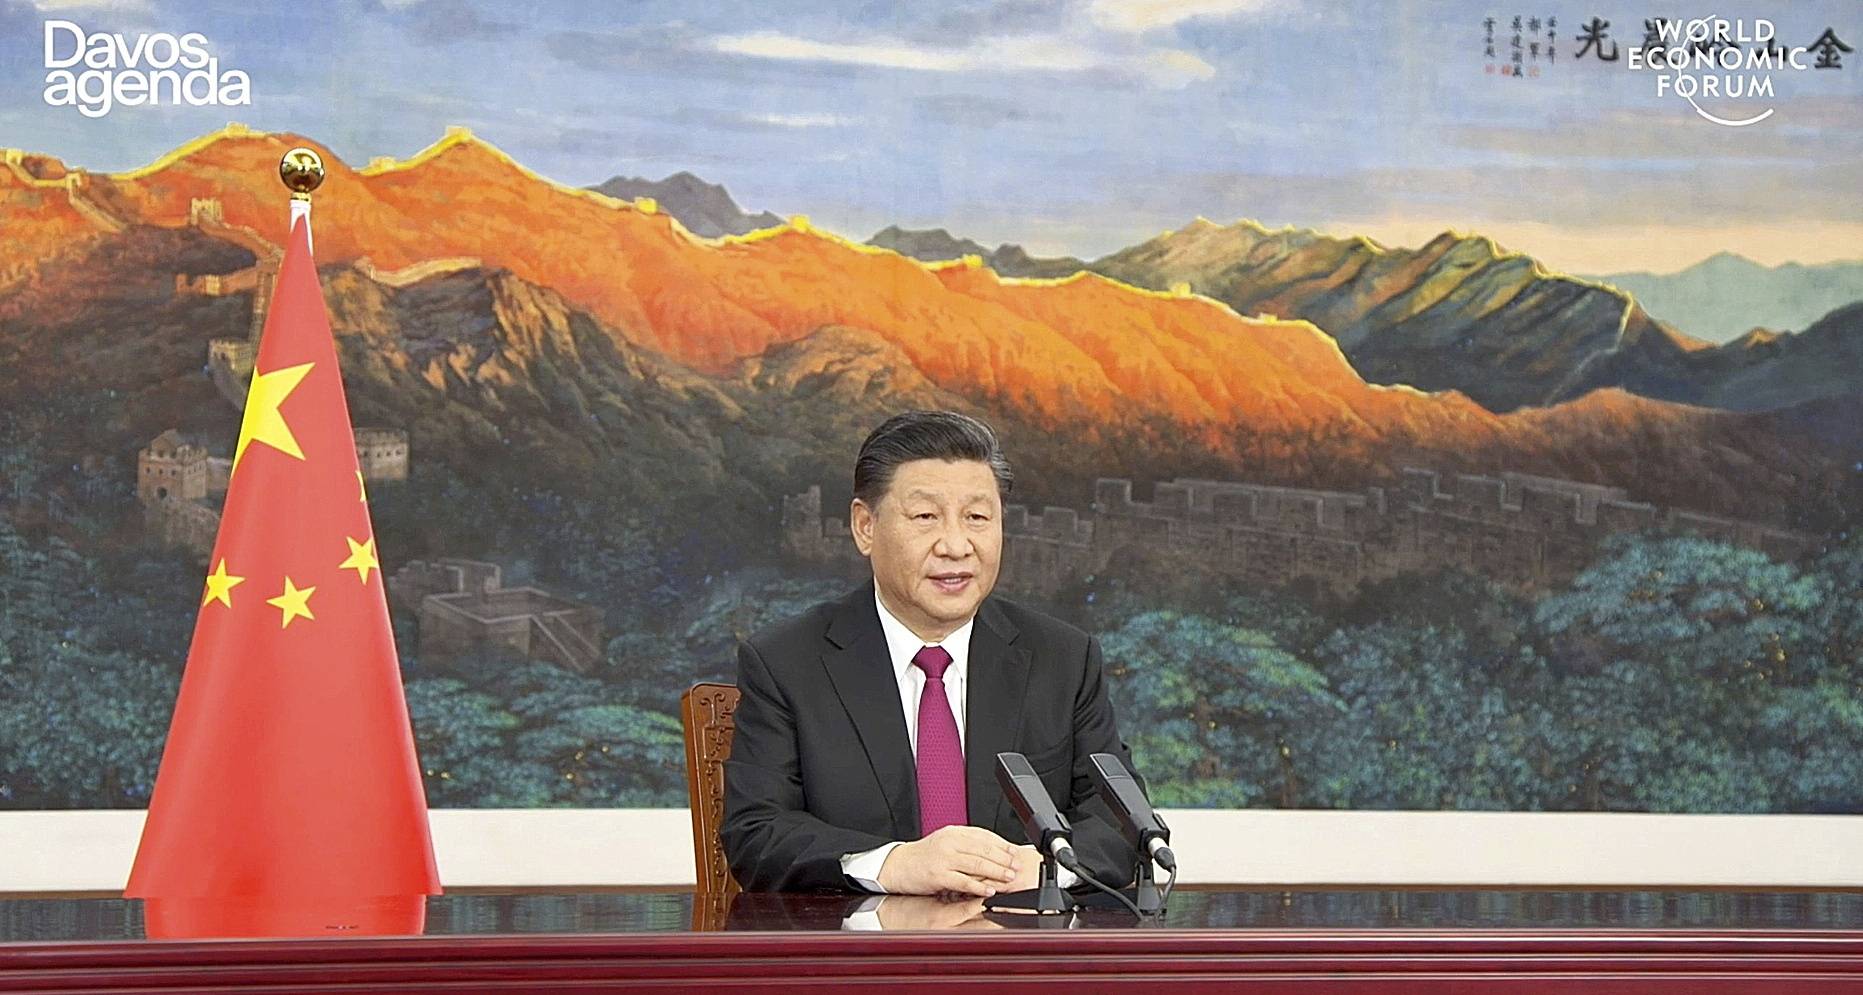 El presidente Xi Jinping, en la cumbre de Davos.